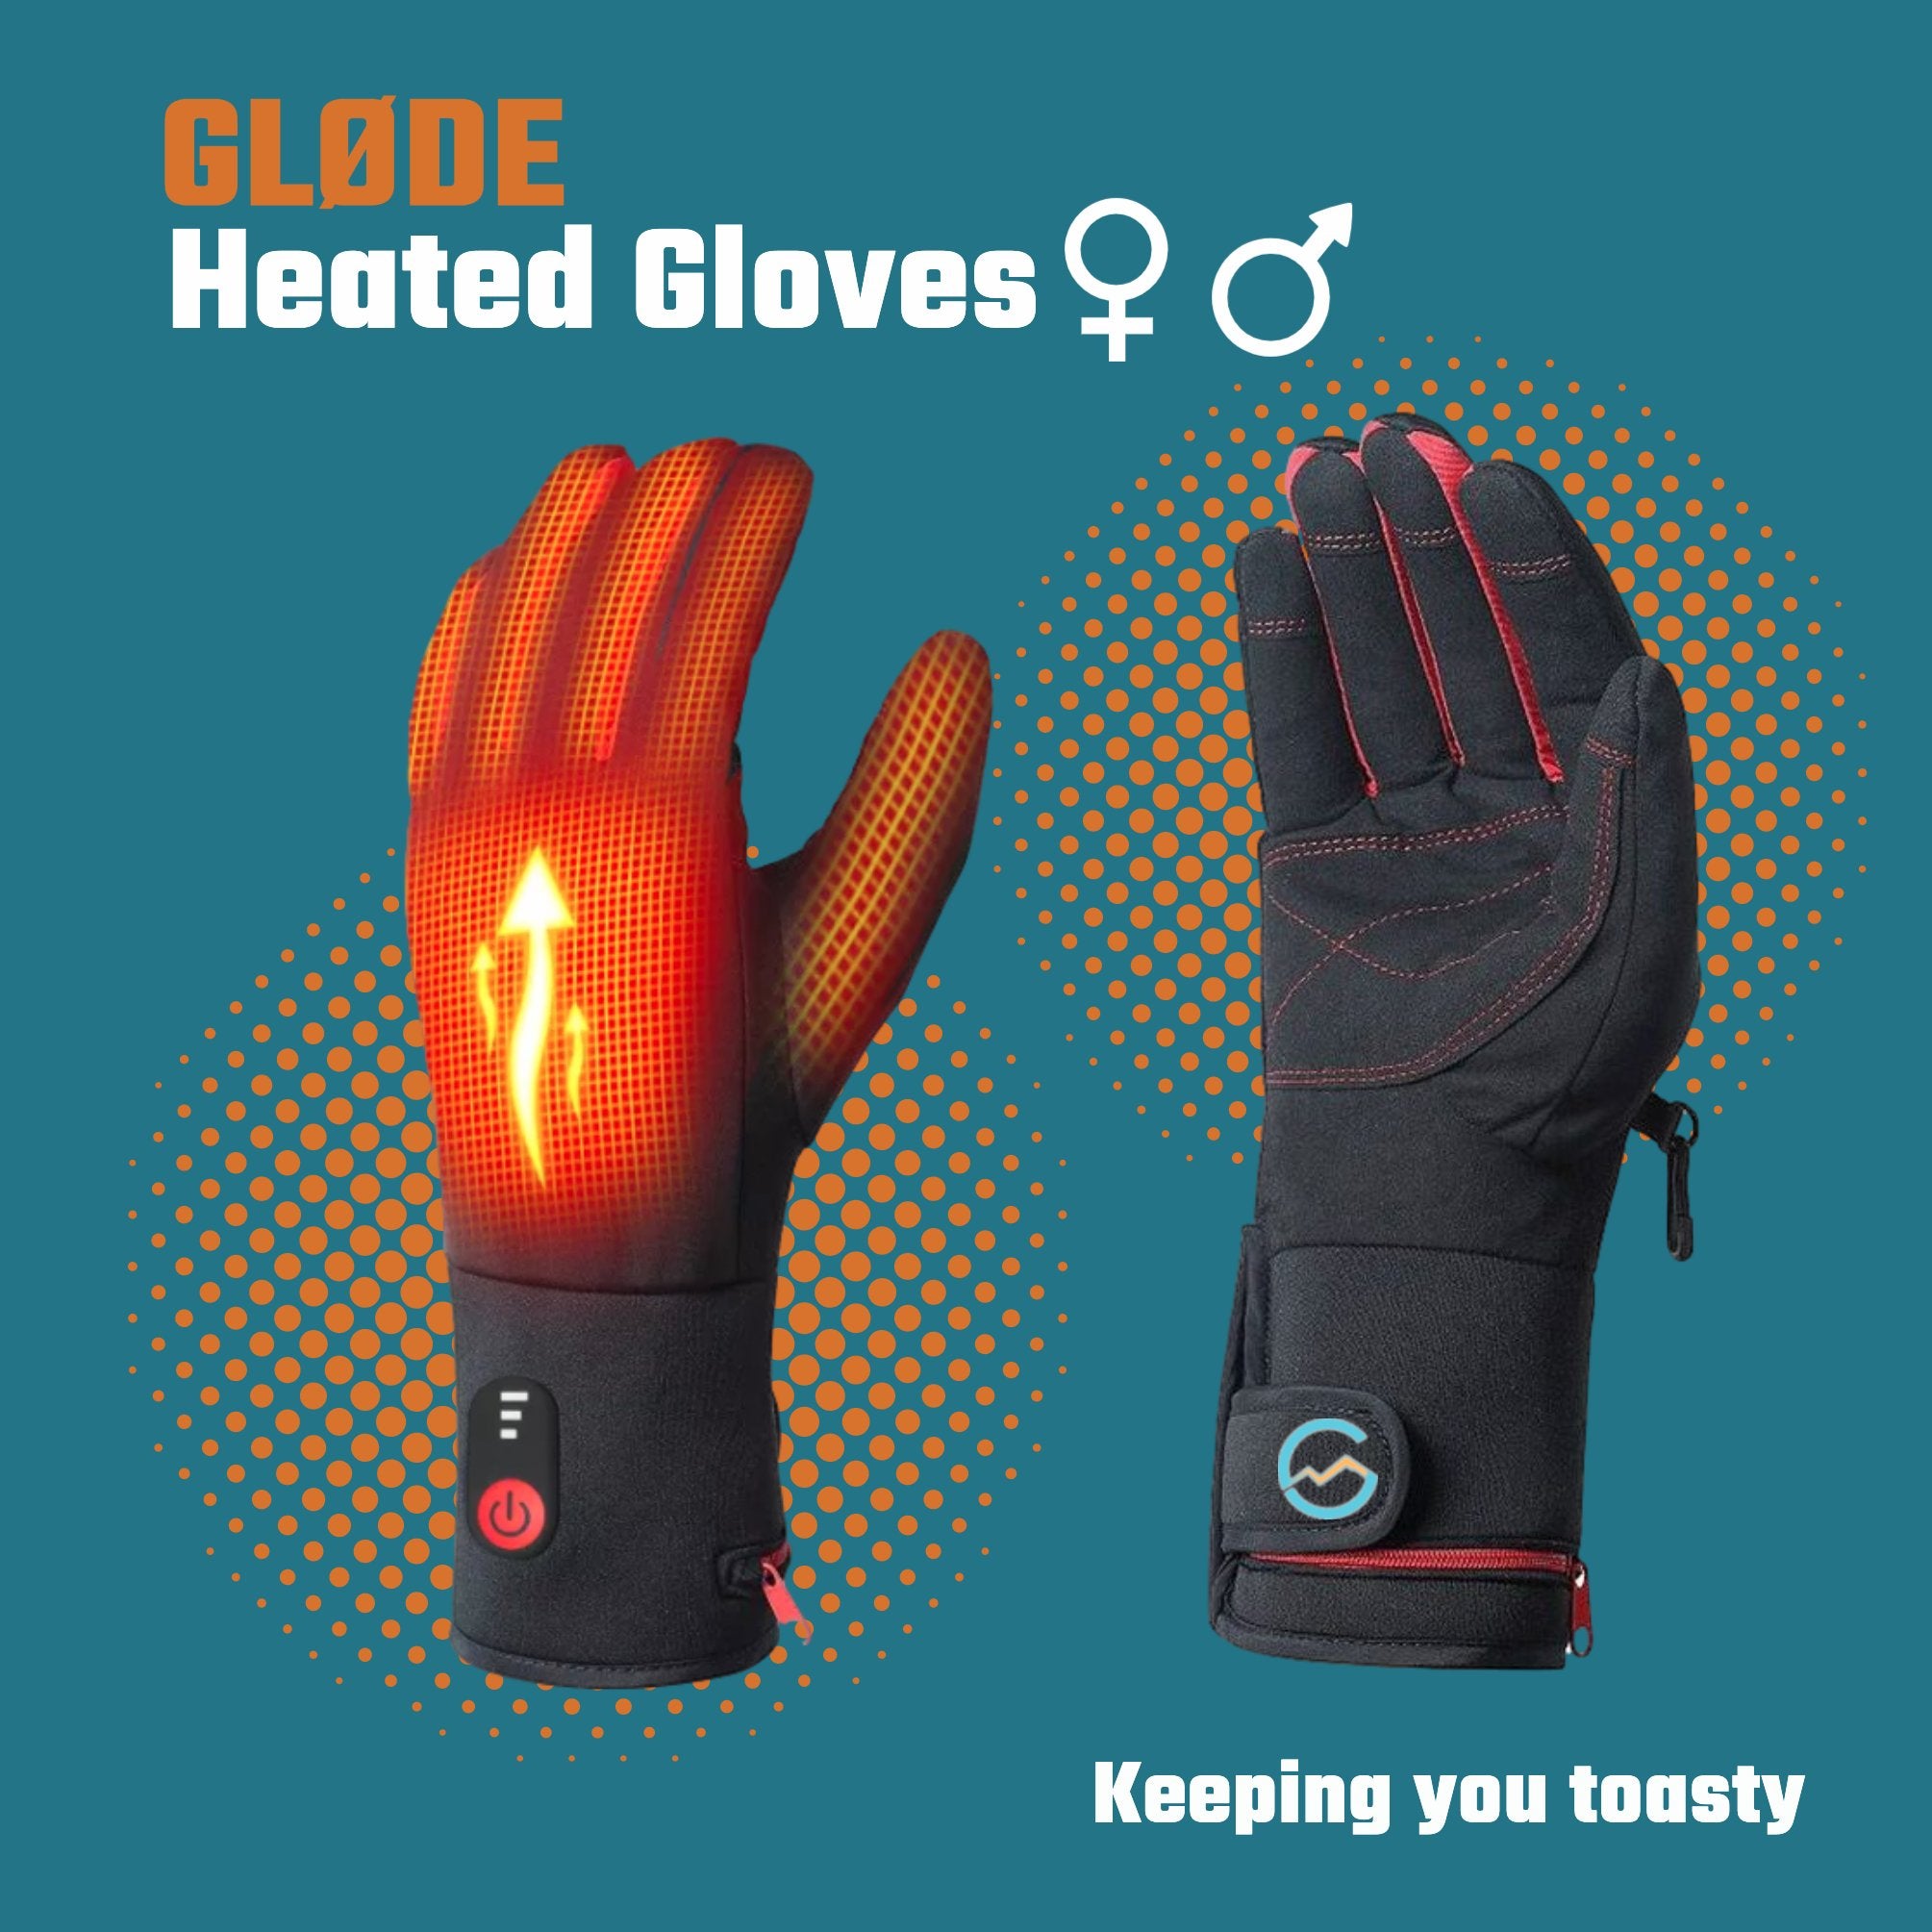 Bezit Pompeii ledematen Verwarmde handschoenen kopen | Top kwaliteit en lekker warm!